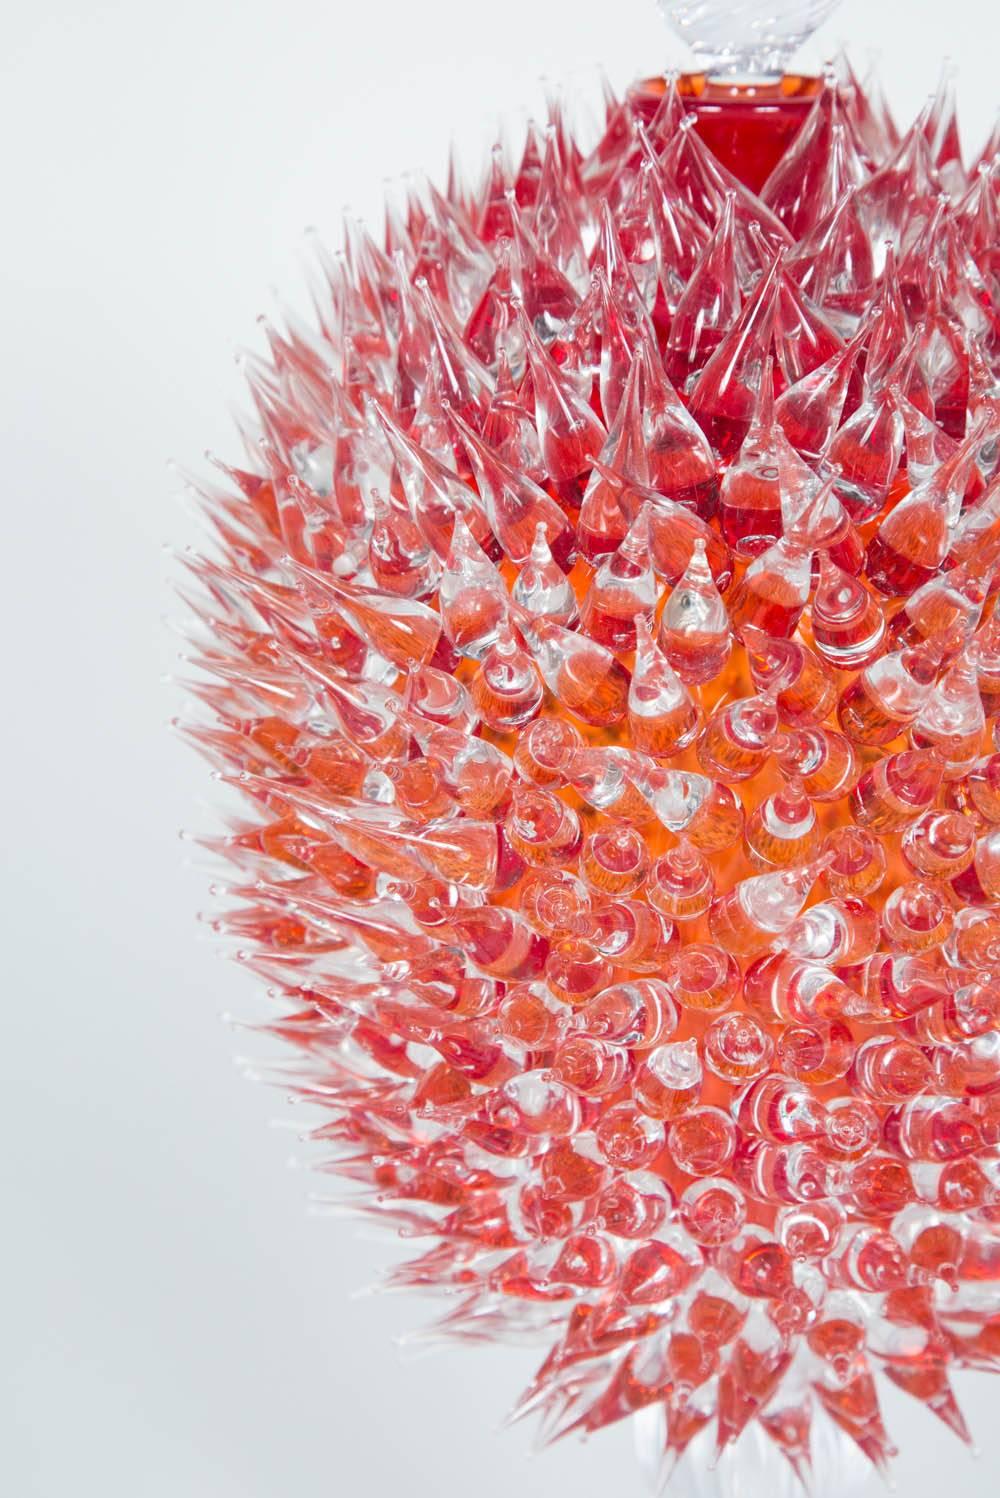 Organique Veronese à acanthe rouge cerise, une jarre en verre transparent et rouge de James Lethbridge en vente